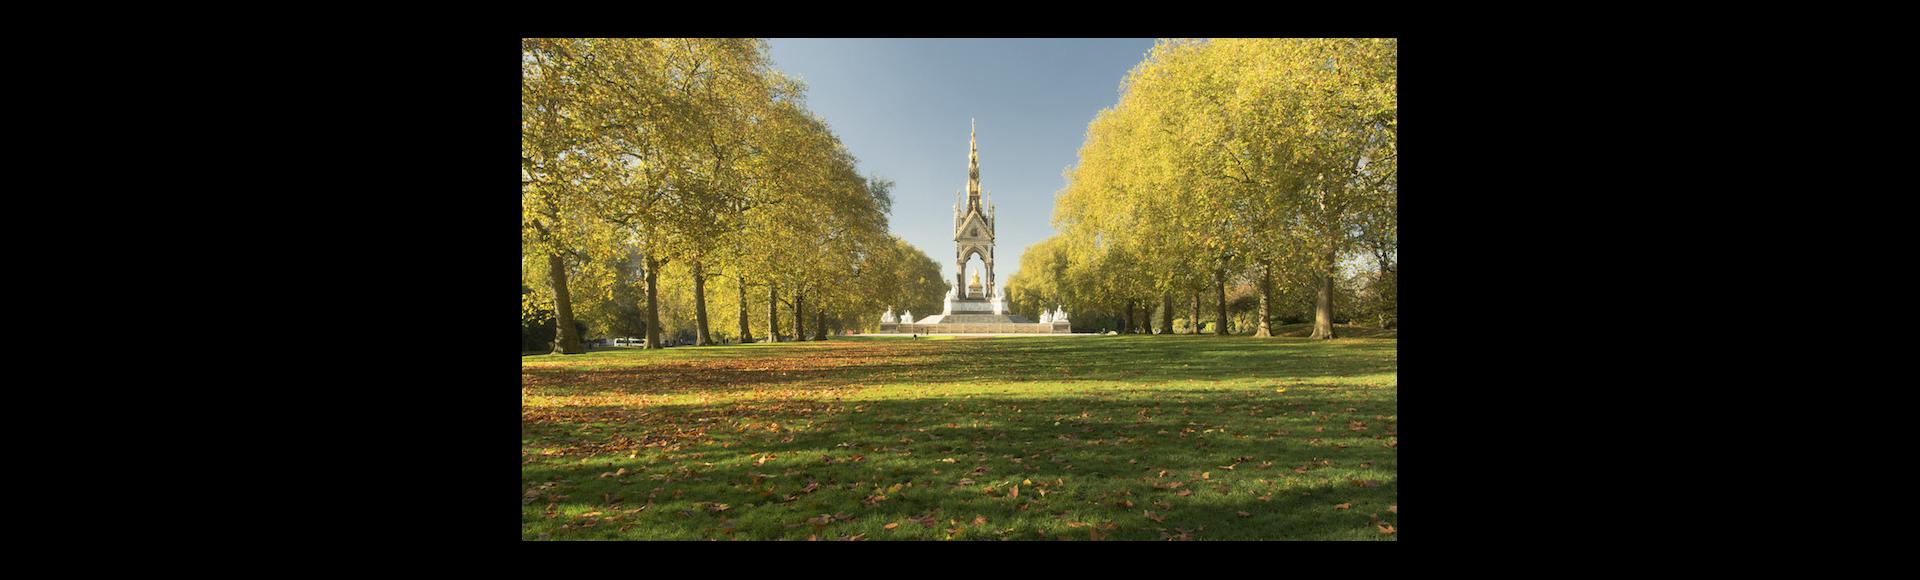 london royal park